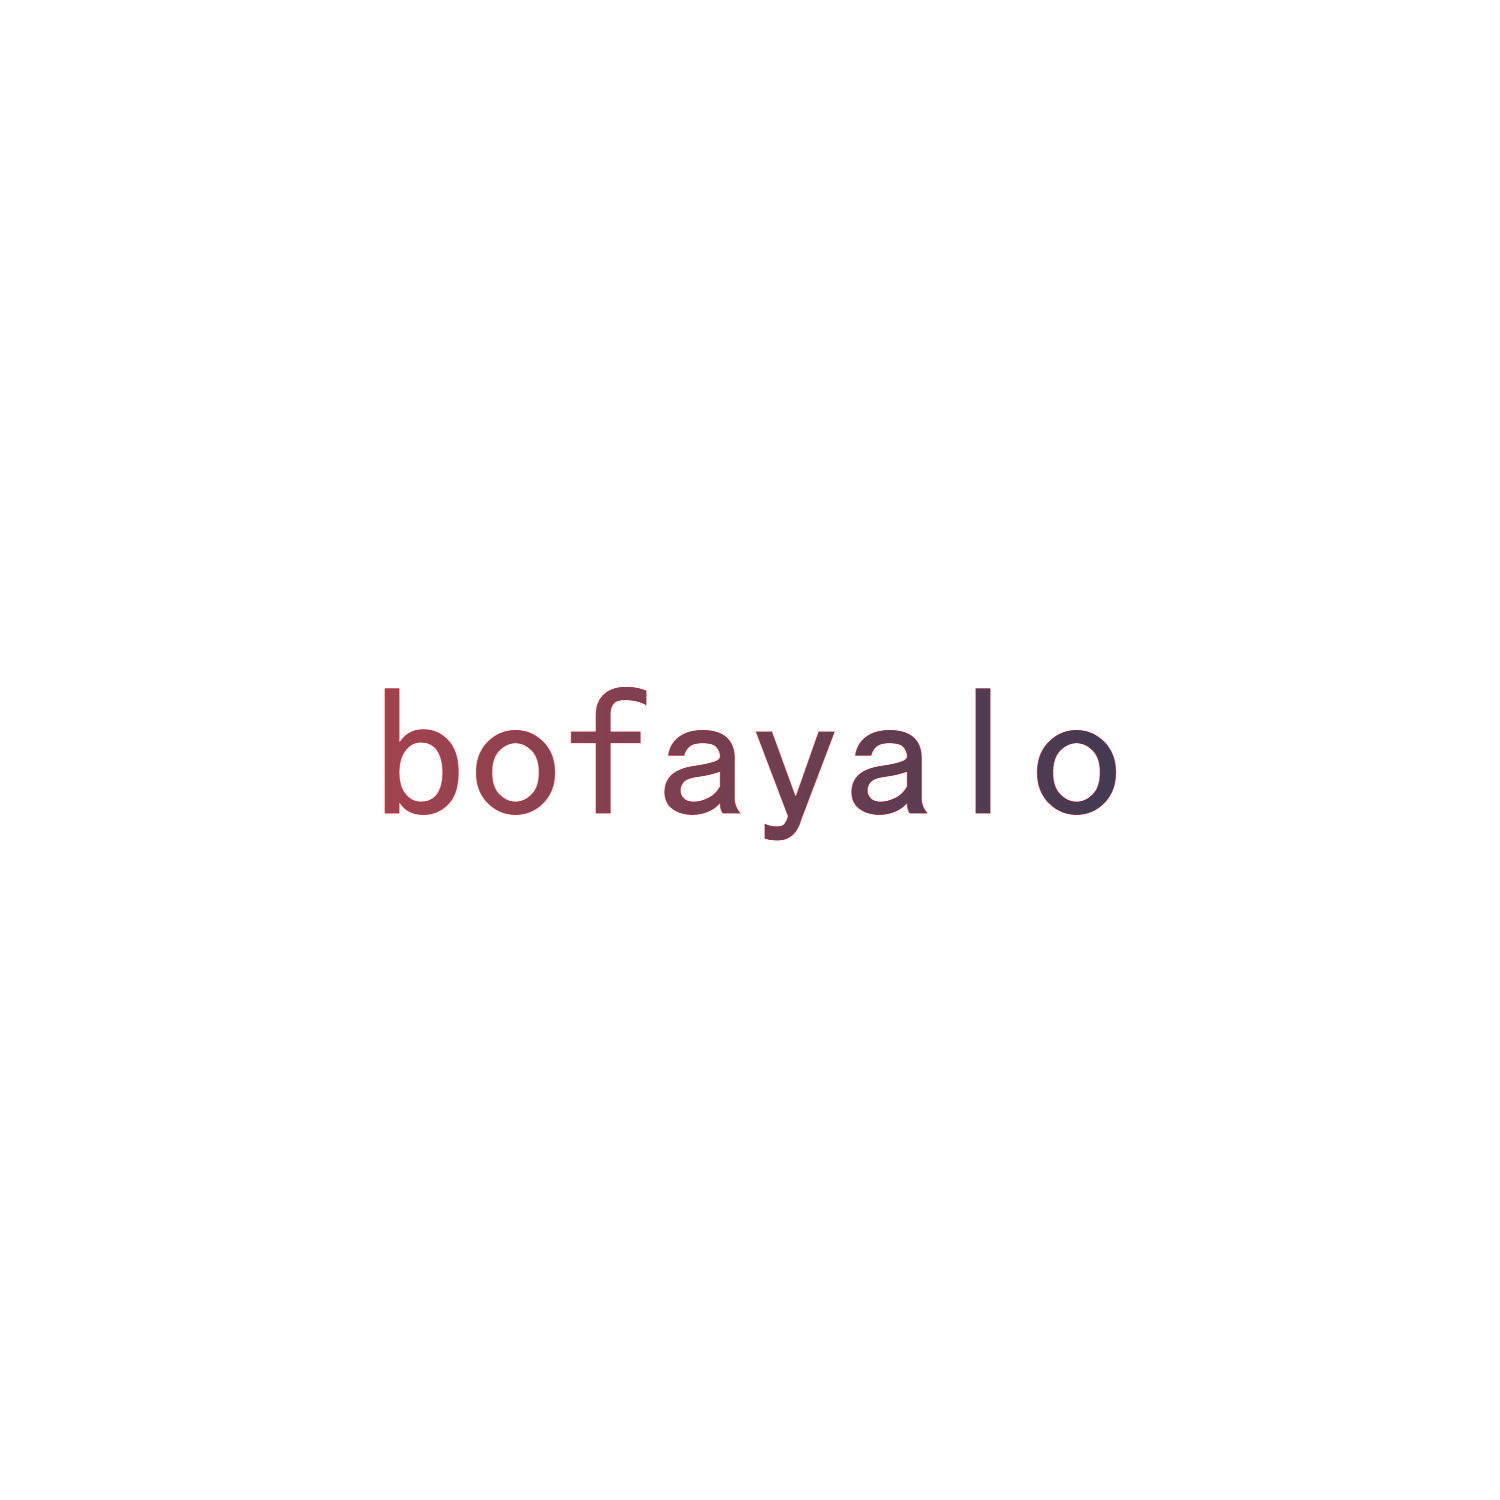 BOFAYALO